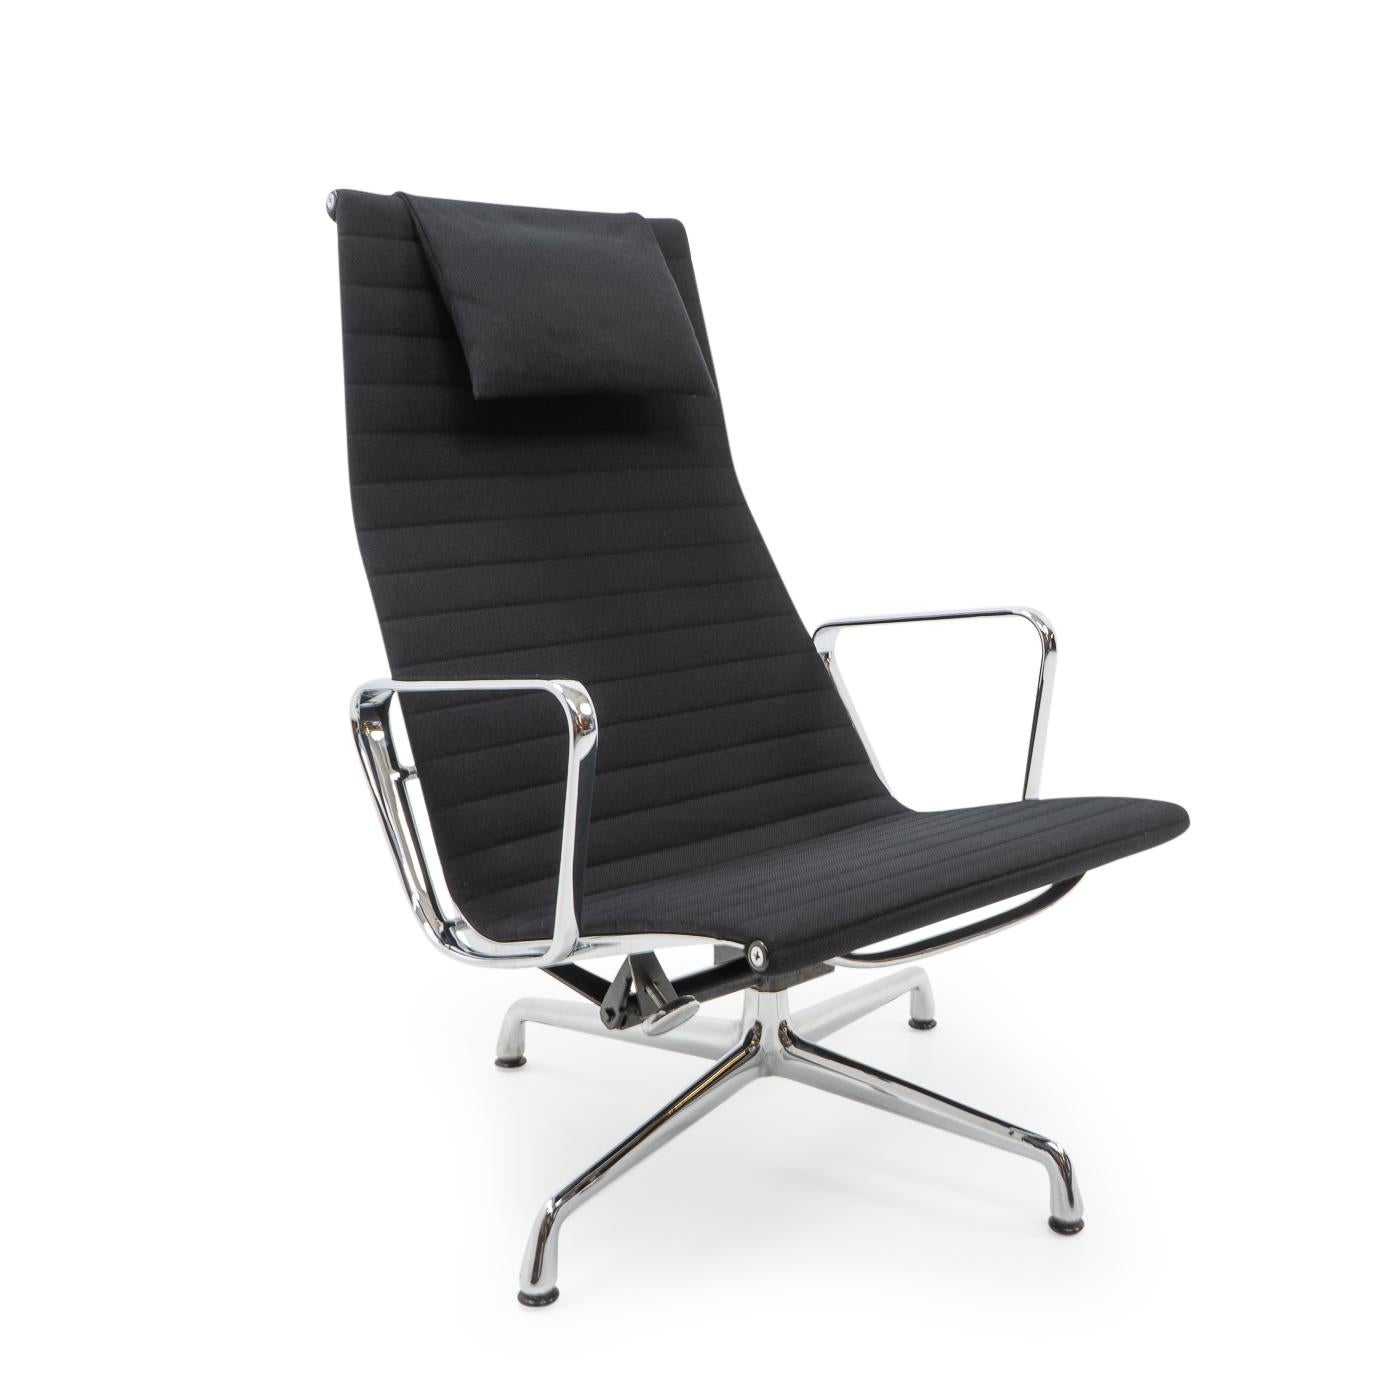 Les chaises Aluminum Group de Charles et Ray Eames sont l'un des designs les plus importants du 20e siècle. Leur design original des années 1950 est toujours d'actualité et confère aux intérieurs du monde entier une touche d'élégance moderne.

Nous